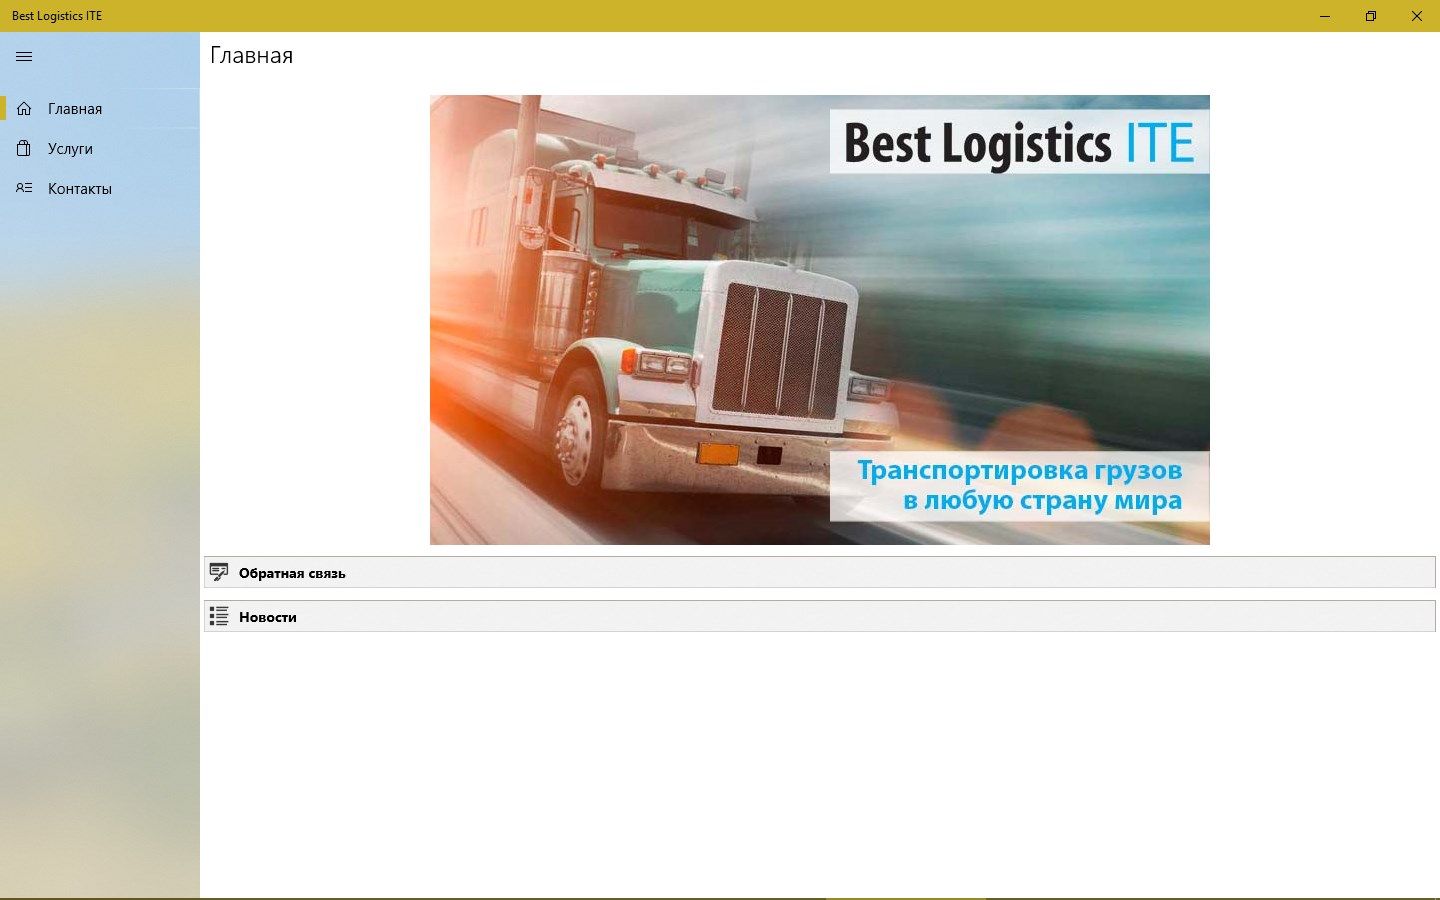 Best Logistics ITE